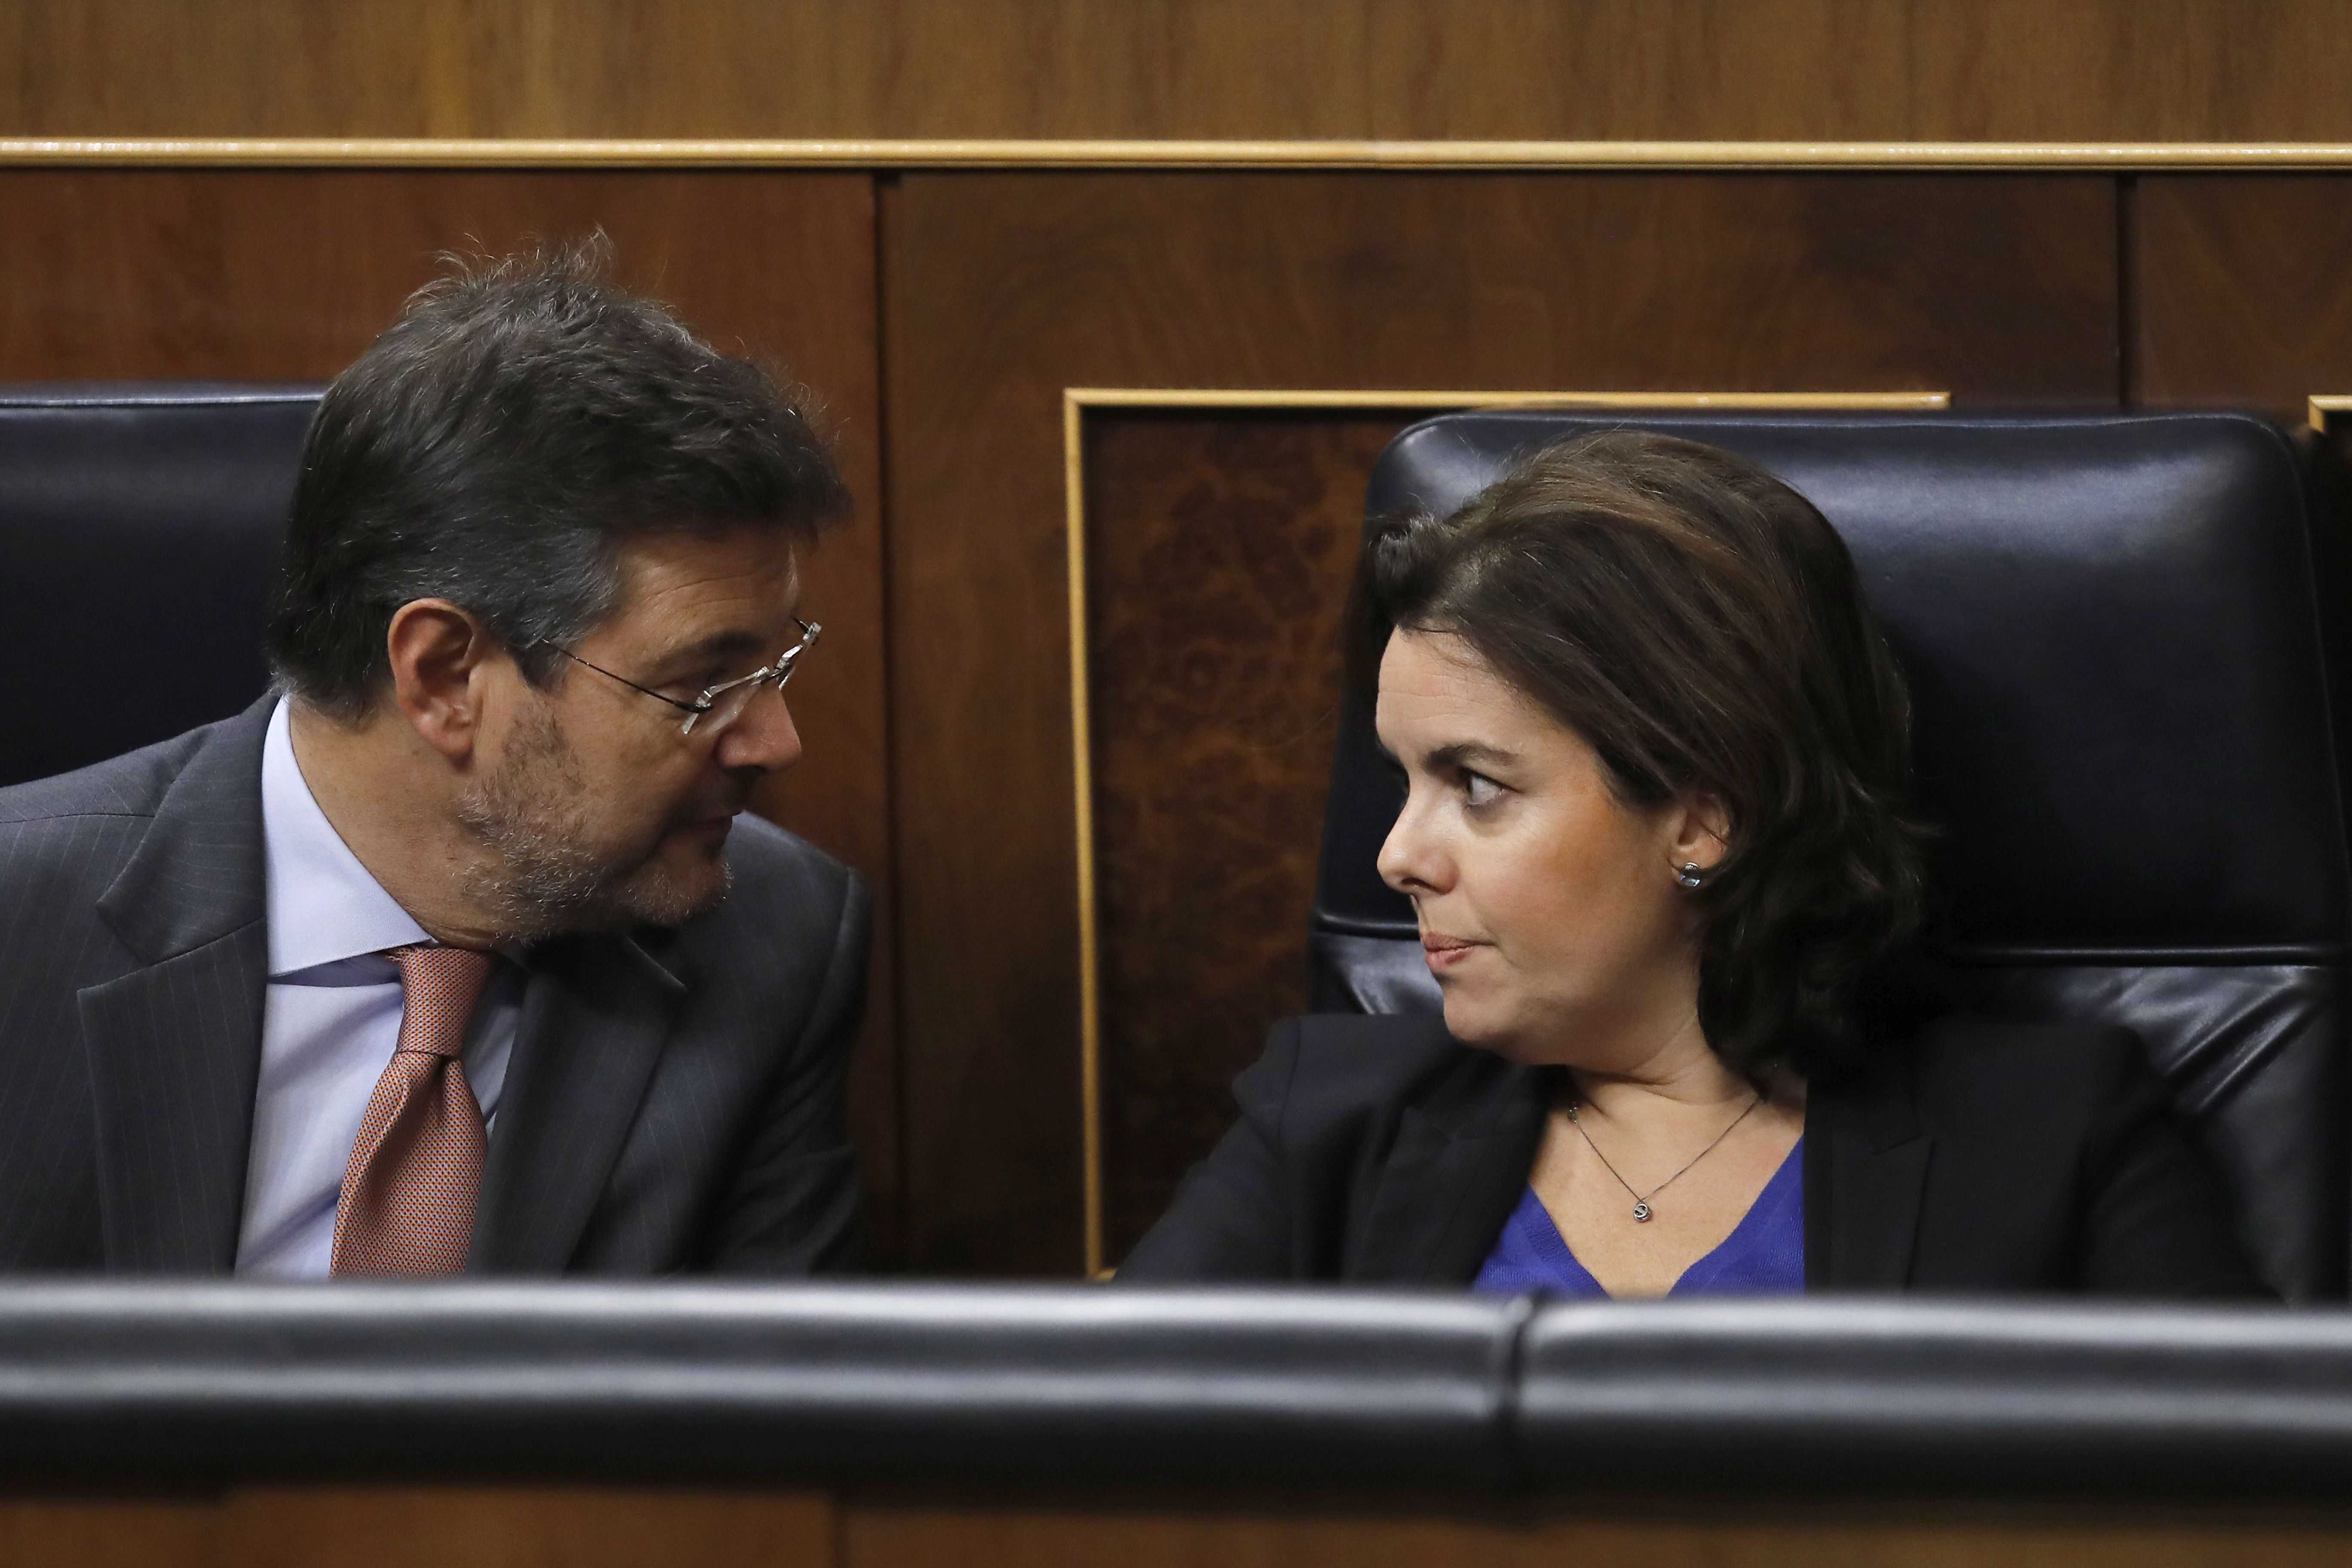 Dura discussió entre Tardà i Santamaría pel referèndum i Vidal